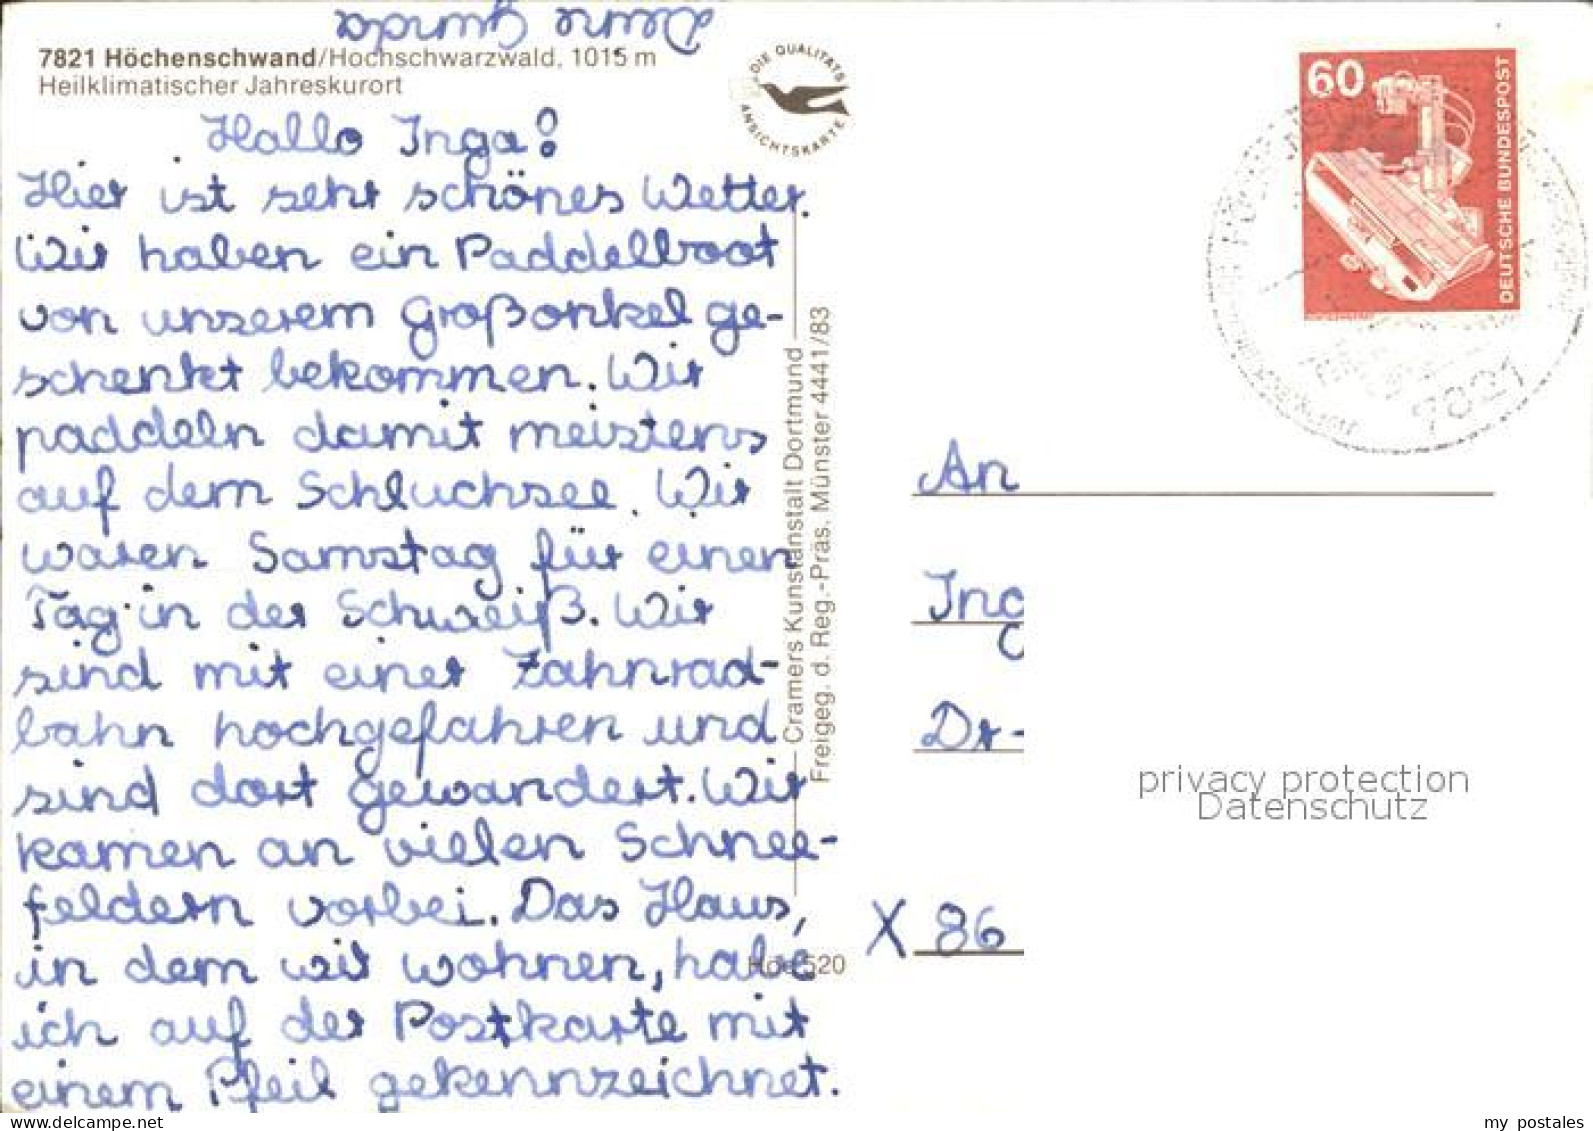 72467653 Hoechenschwand Luftbild Hoechenschwand - Höchenschwand